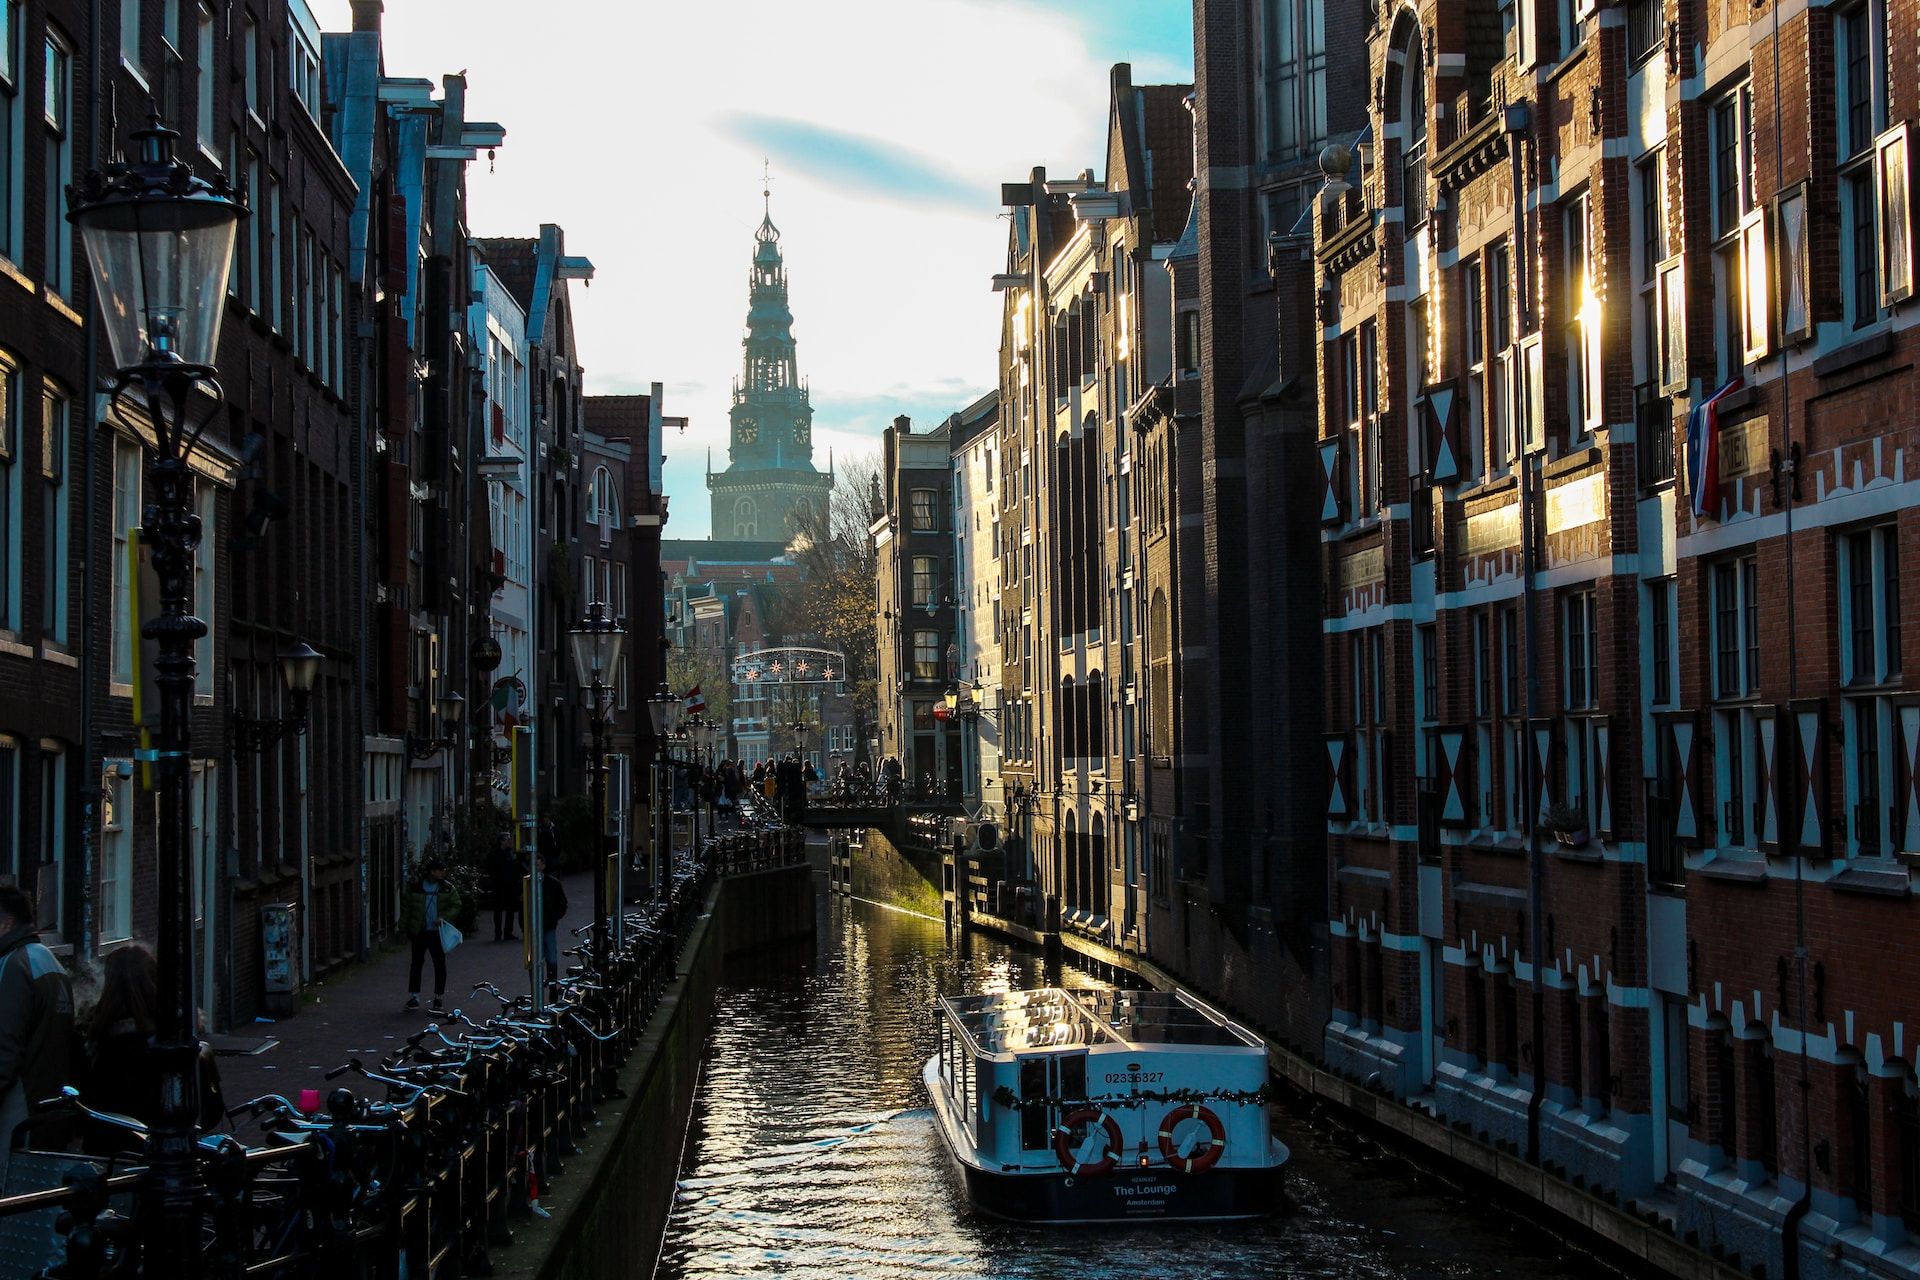 A church behind a canal in Amsterdam